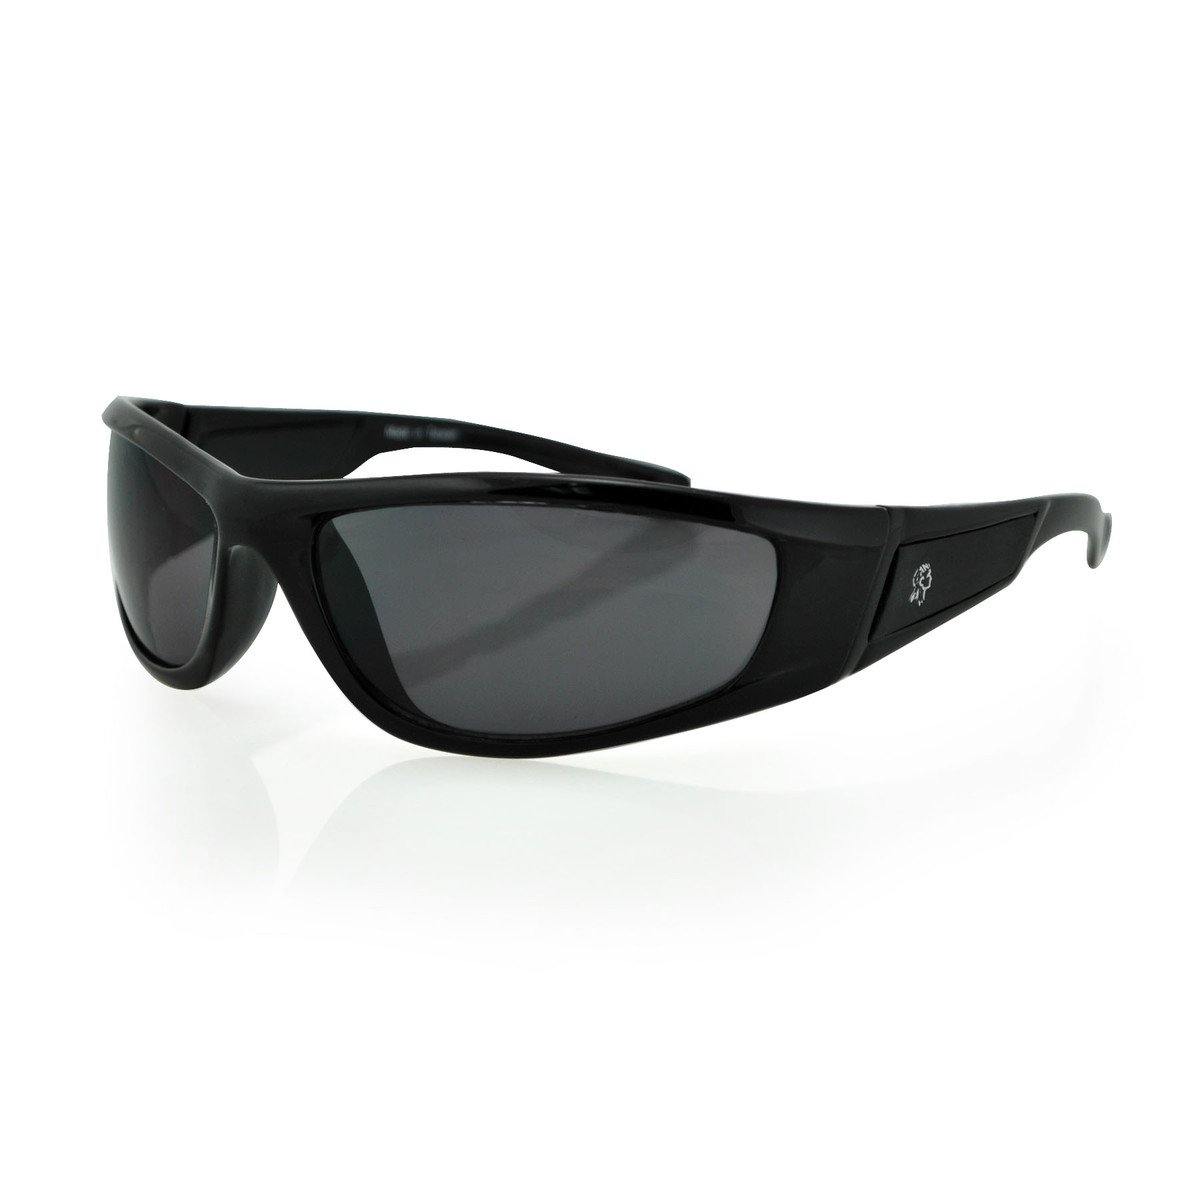 Zan headgear® Lowa Sunglasses - American Legend Rider